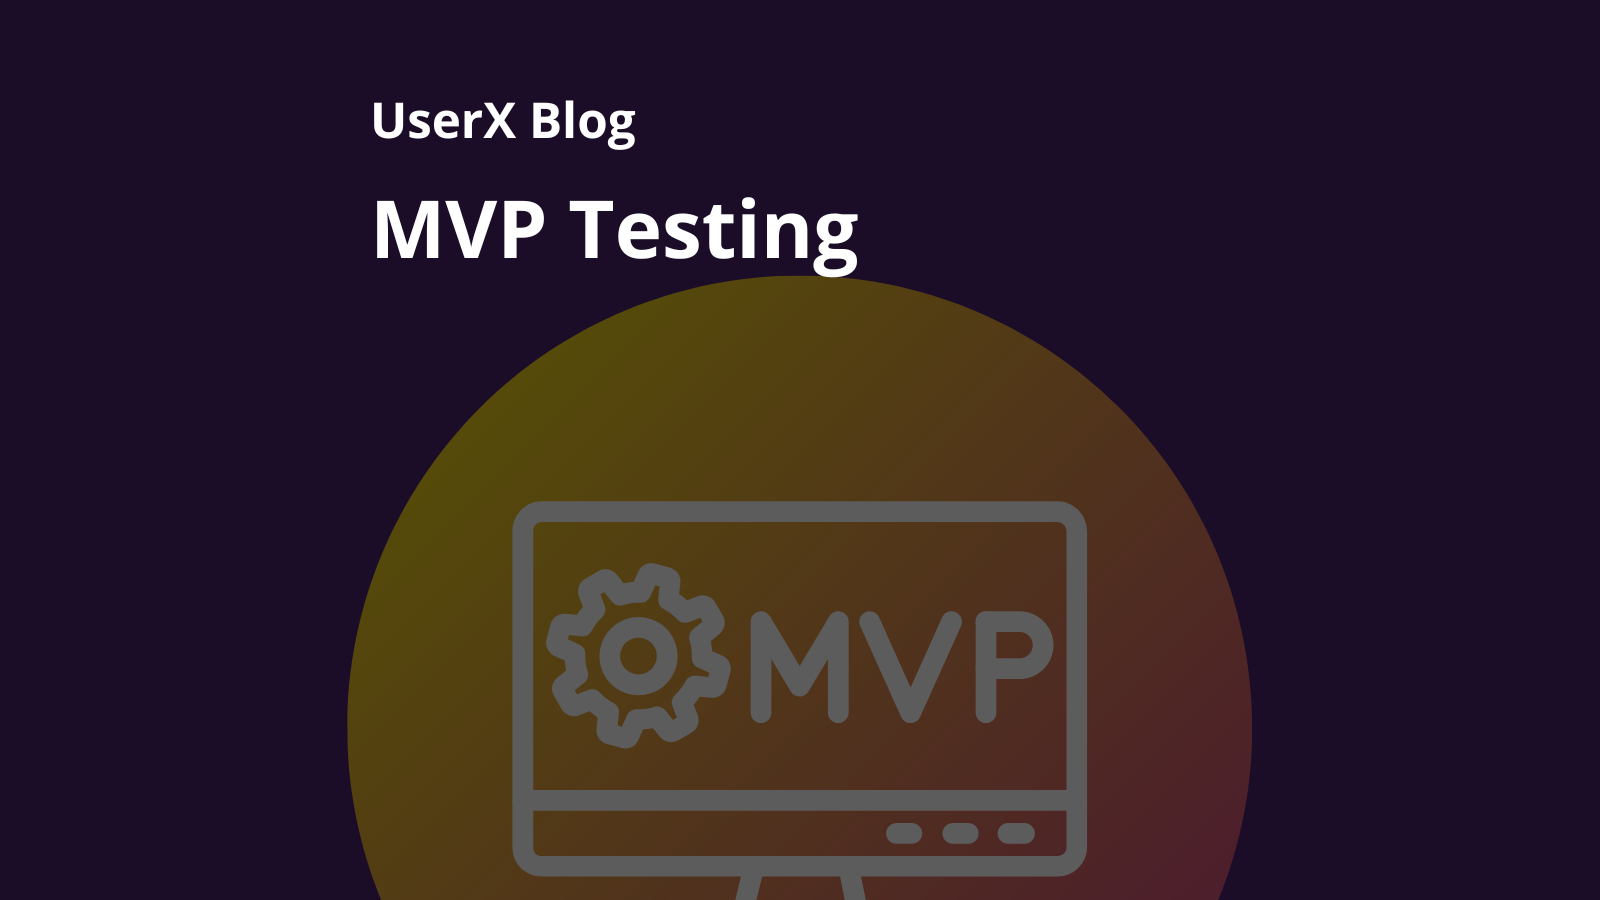 MVP Testing for mobile apps